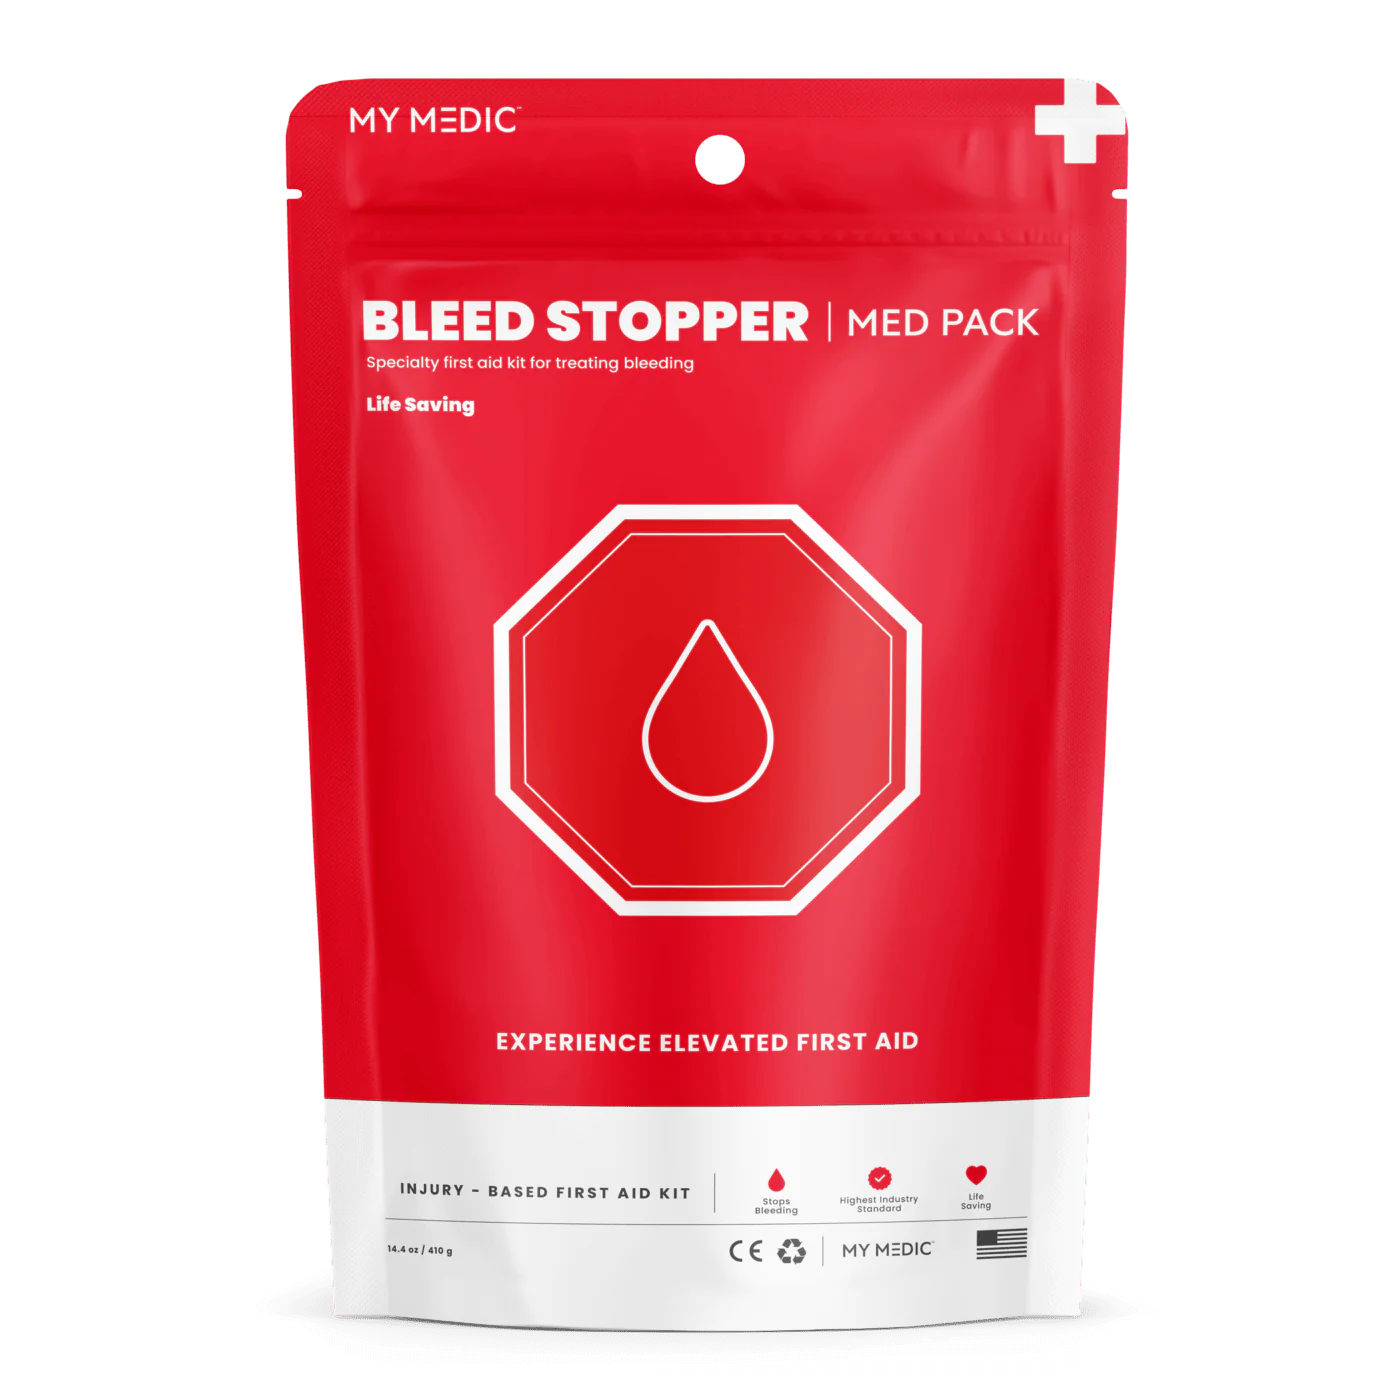 Bleed Stopper Med Pack